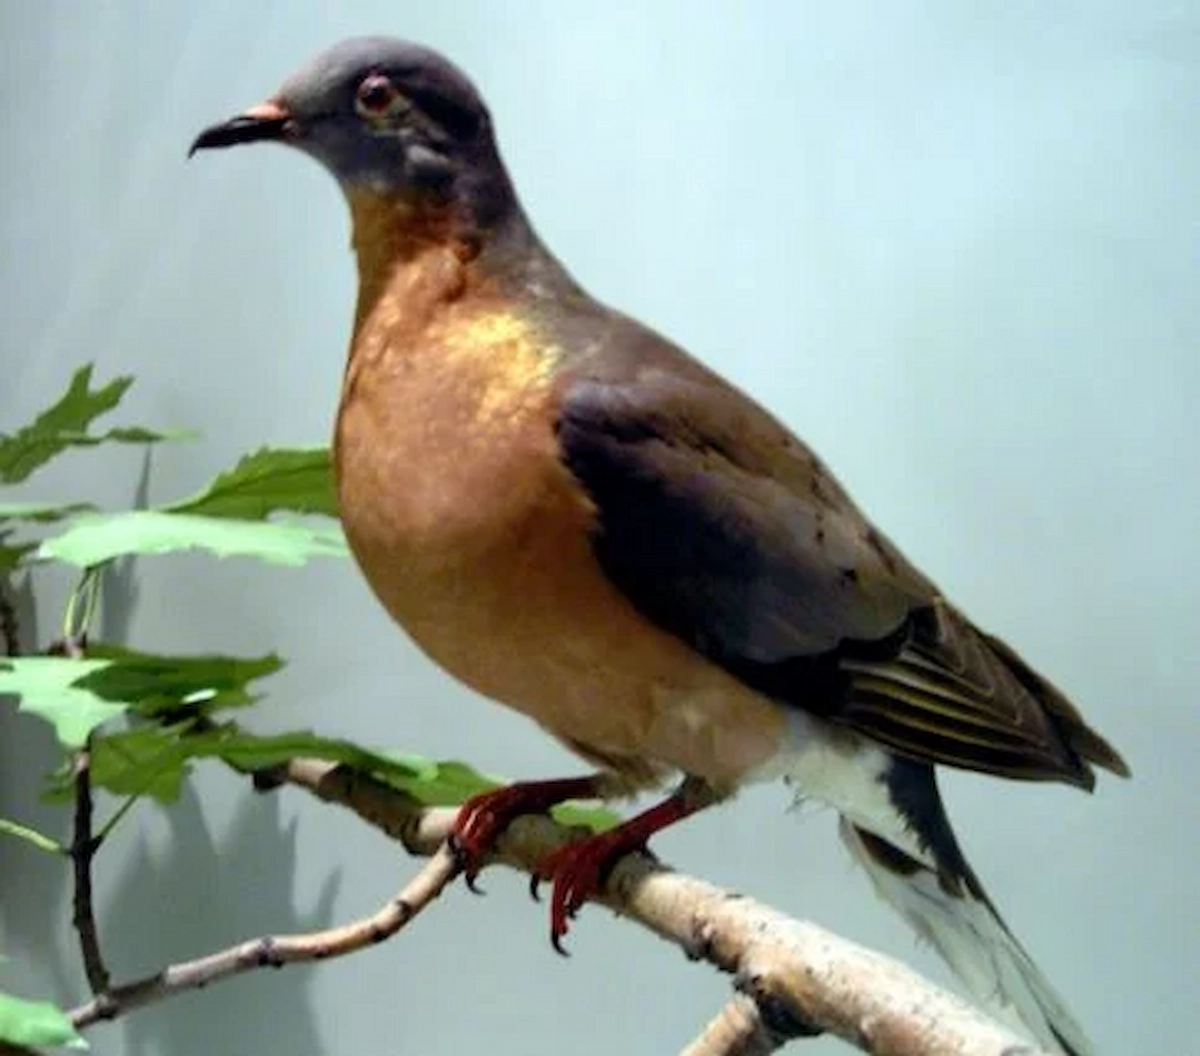 passenger-pigeon-wikimedia-commons-keith-schengili-roberts